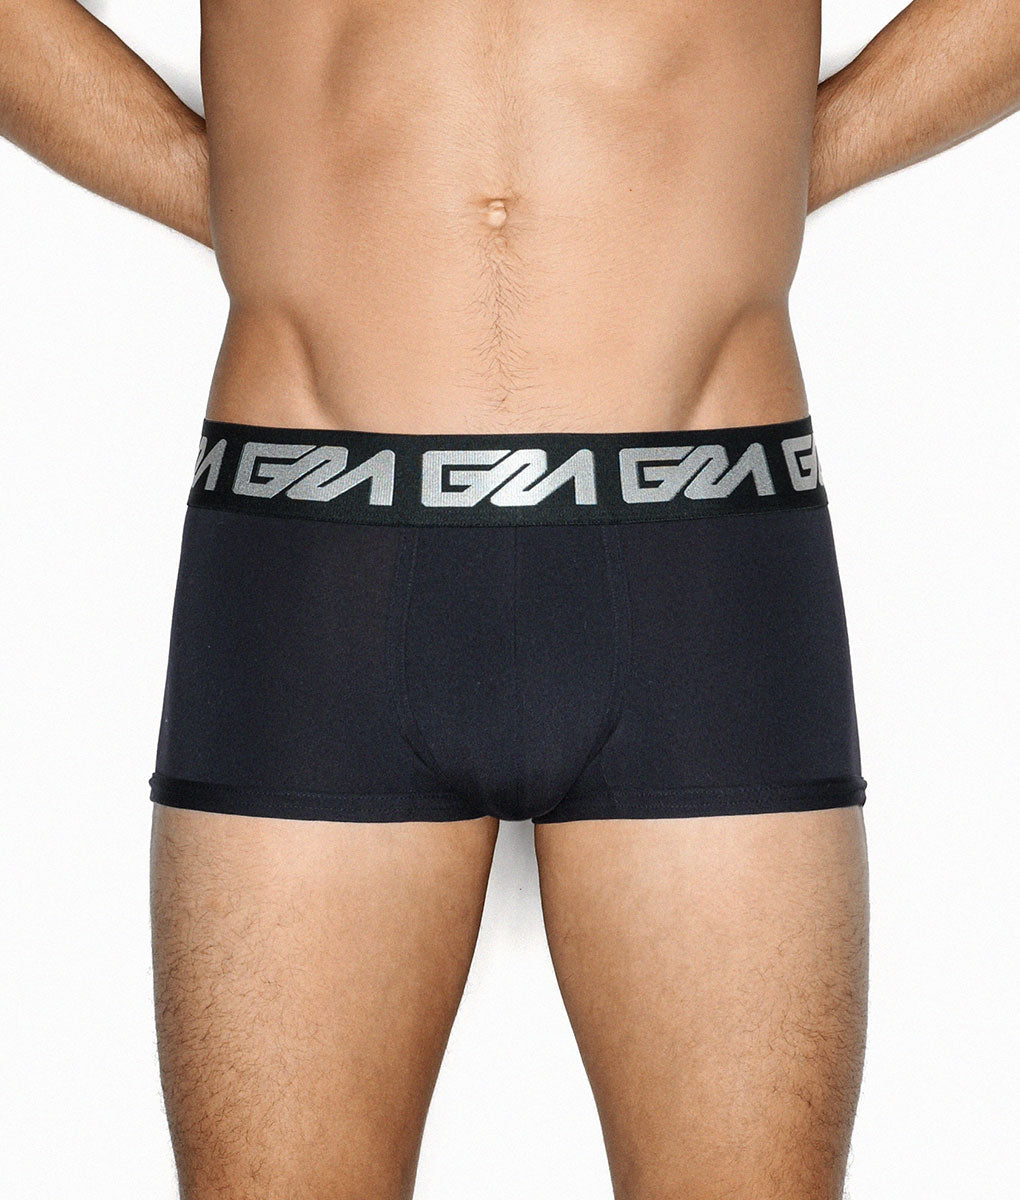 Garcon Model Trunk - Underwear Expert